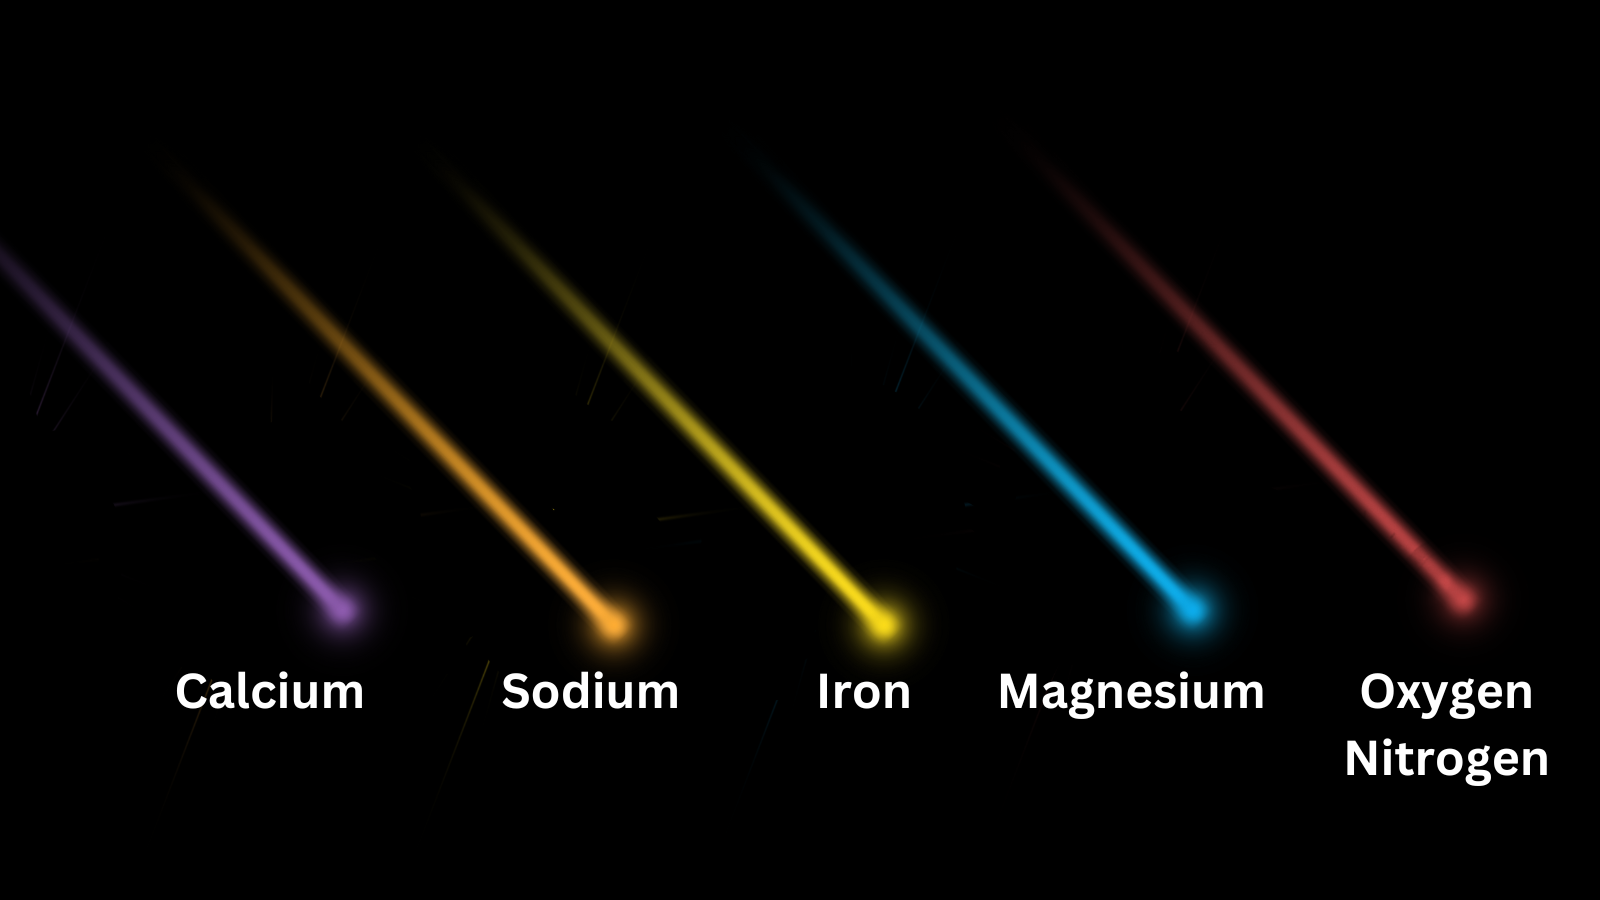 Ilustração mostrando as diferentes cores das bolas de fogo e os produtos químicos que elas indicam